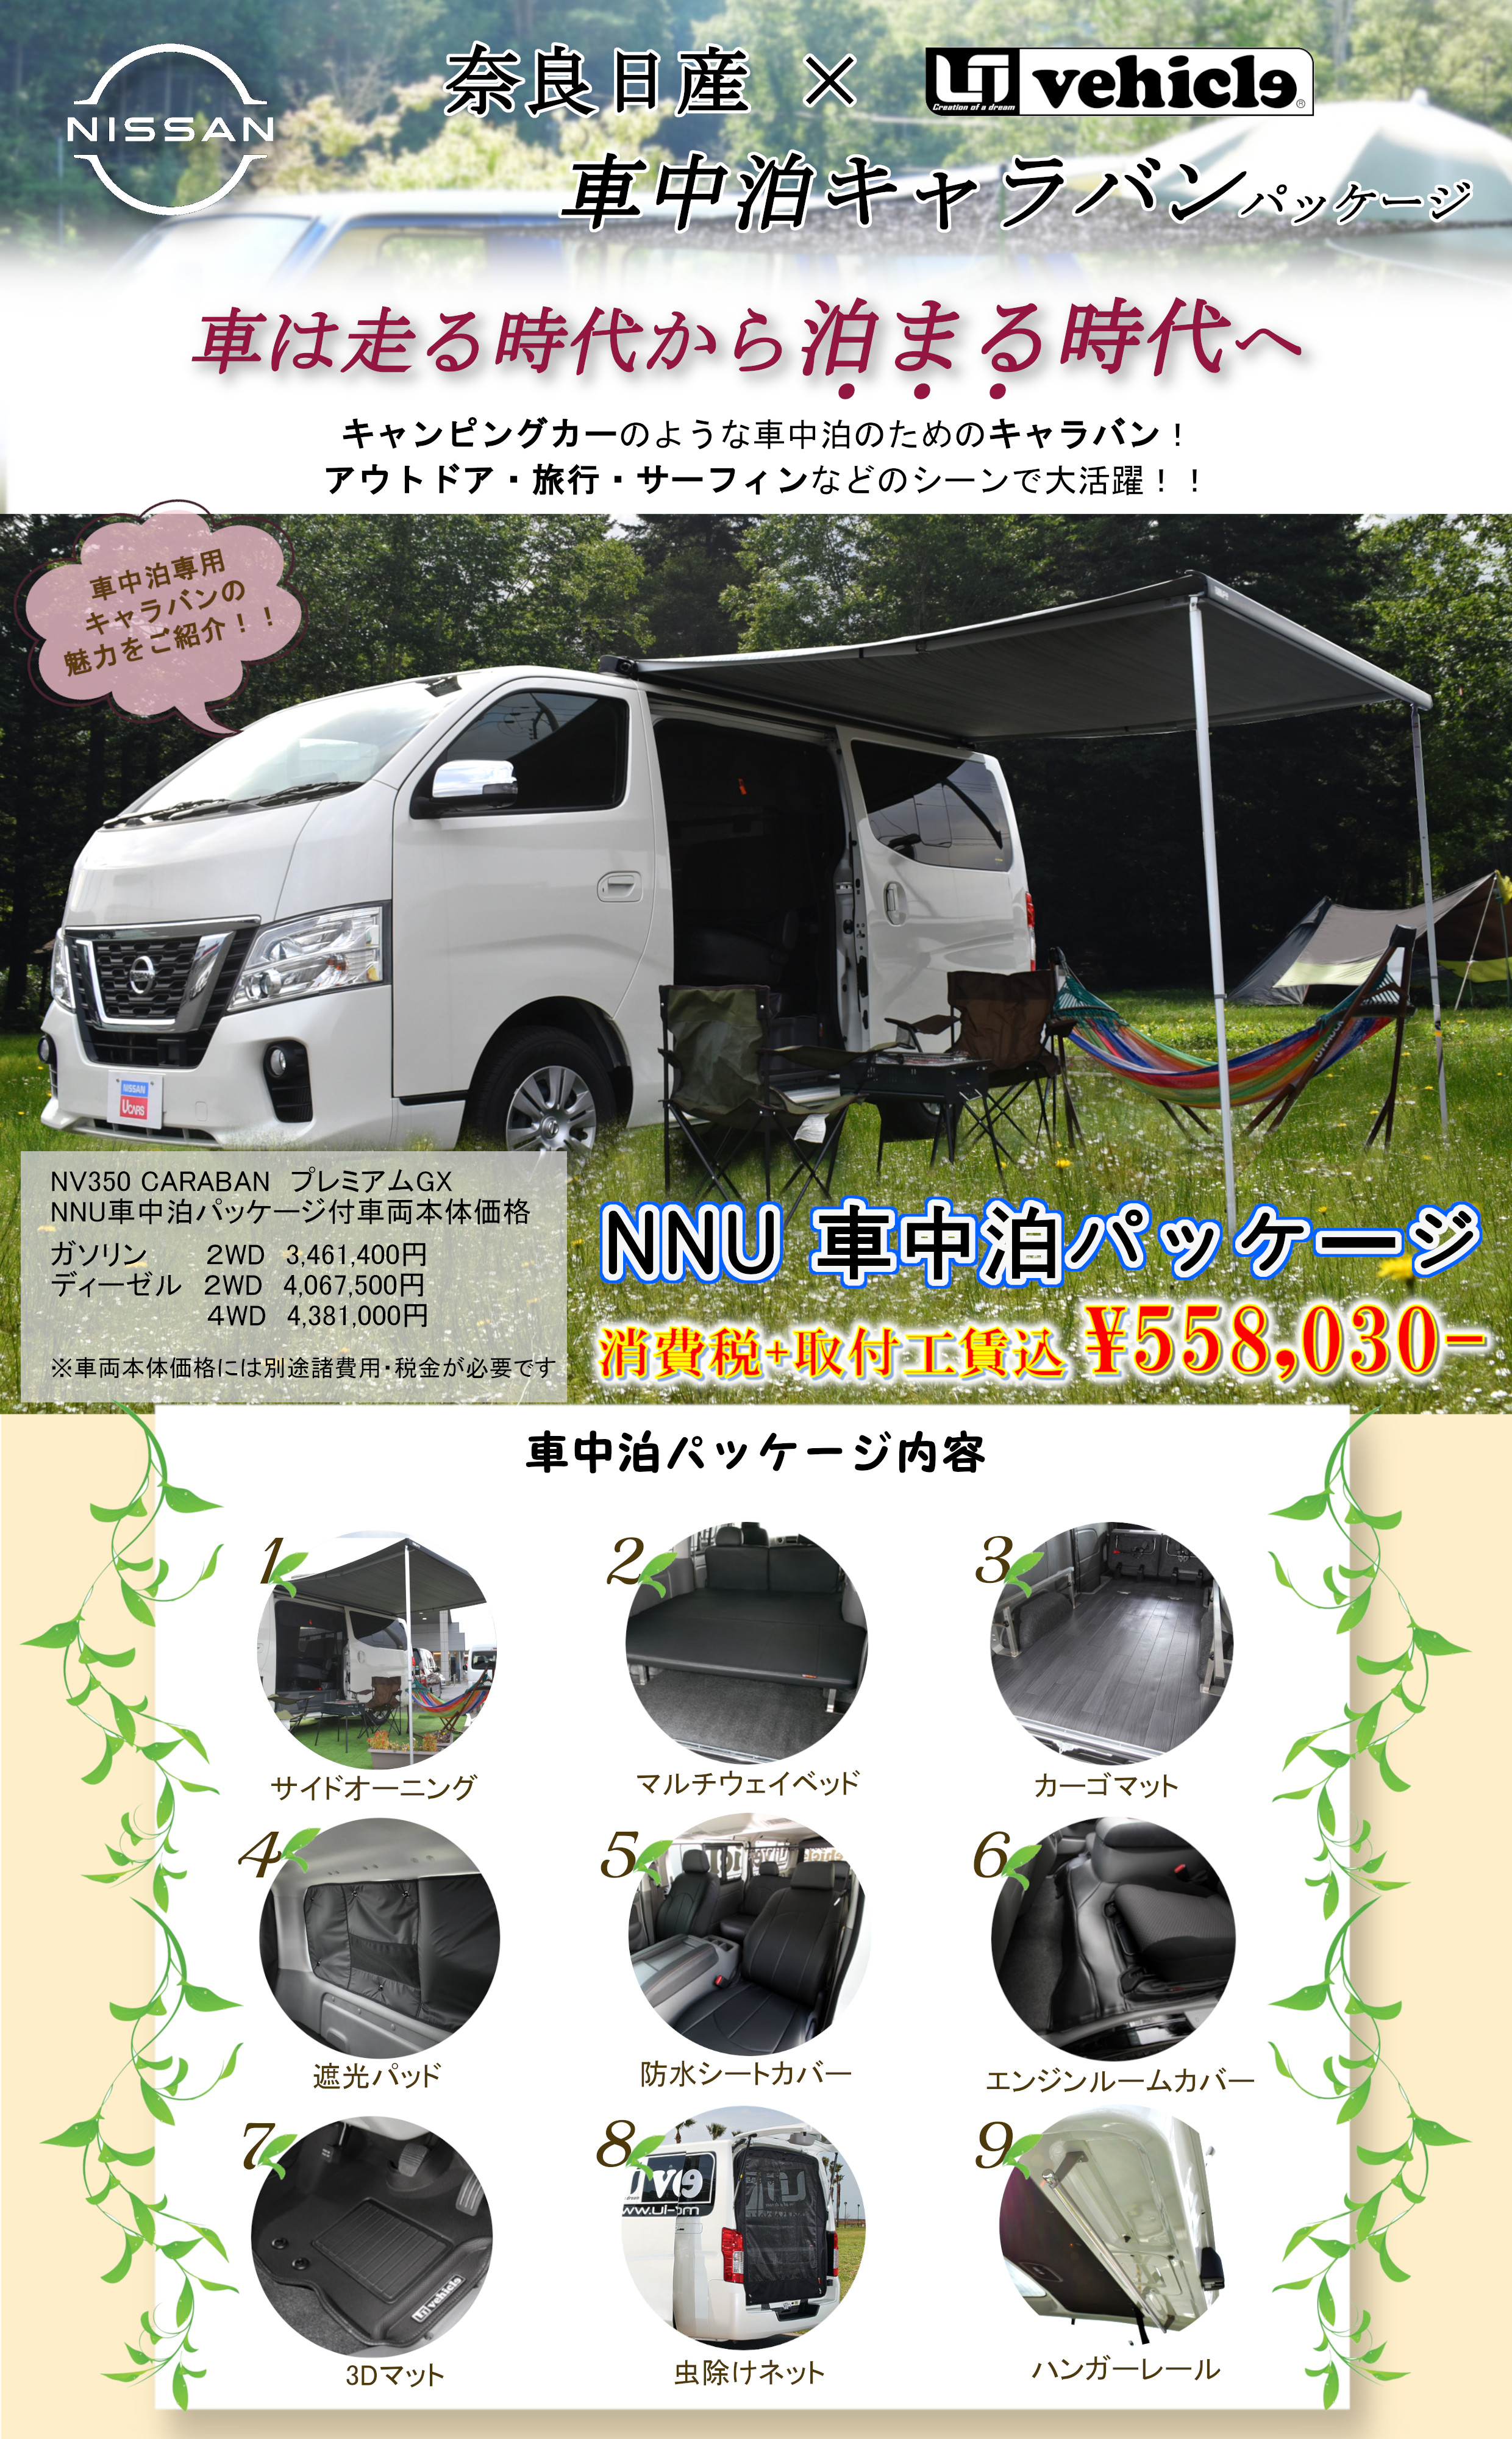 奈良日産自動車株式会社 11 Nv350キャラバン車中泊